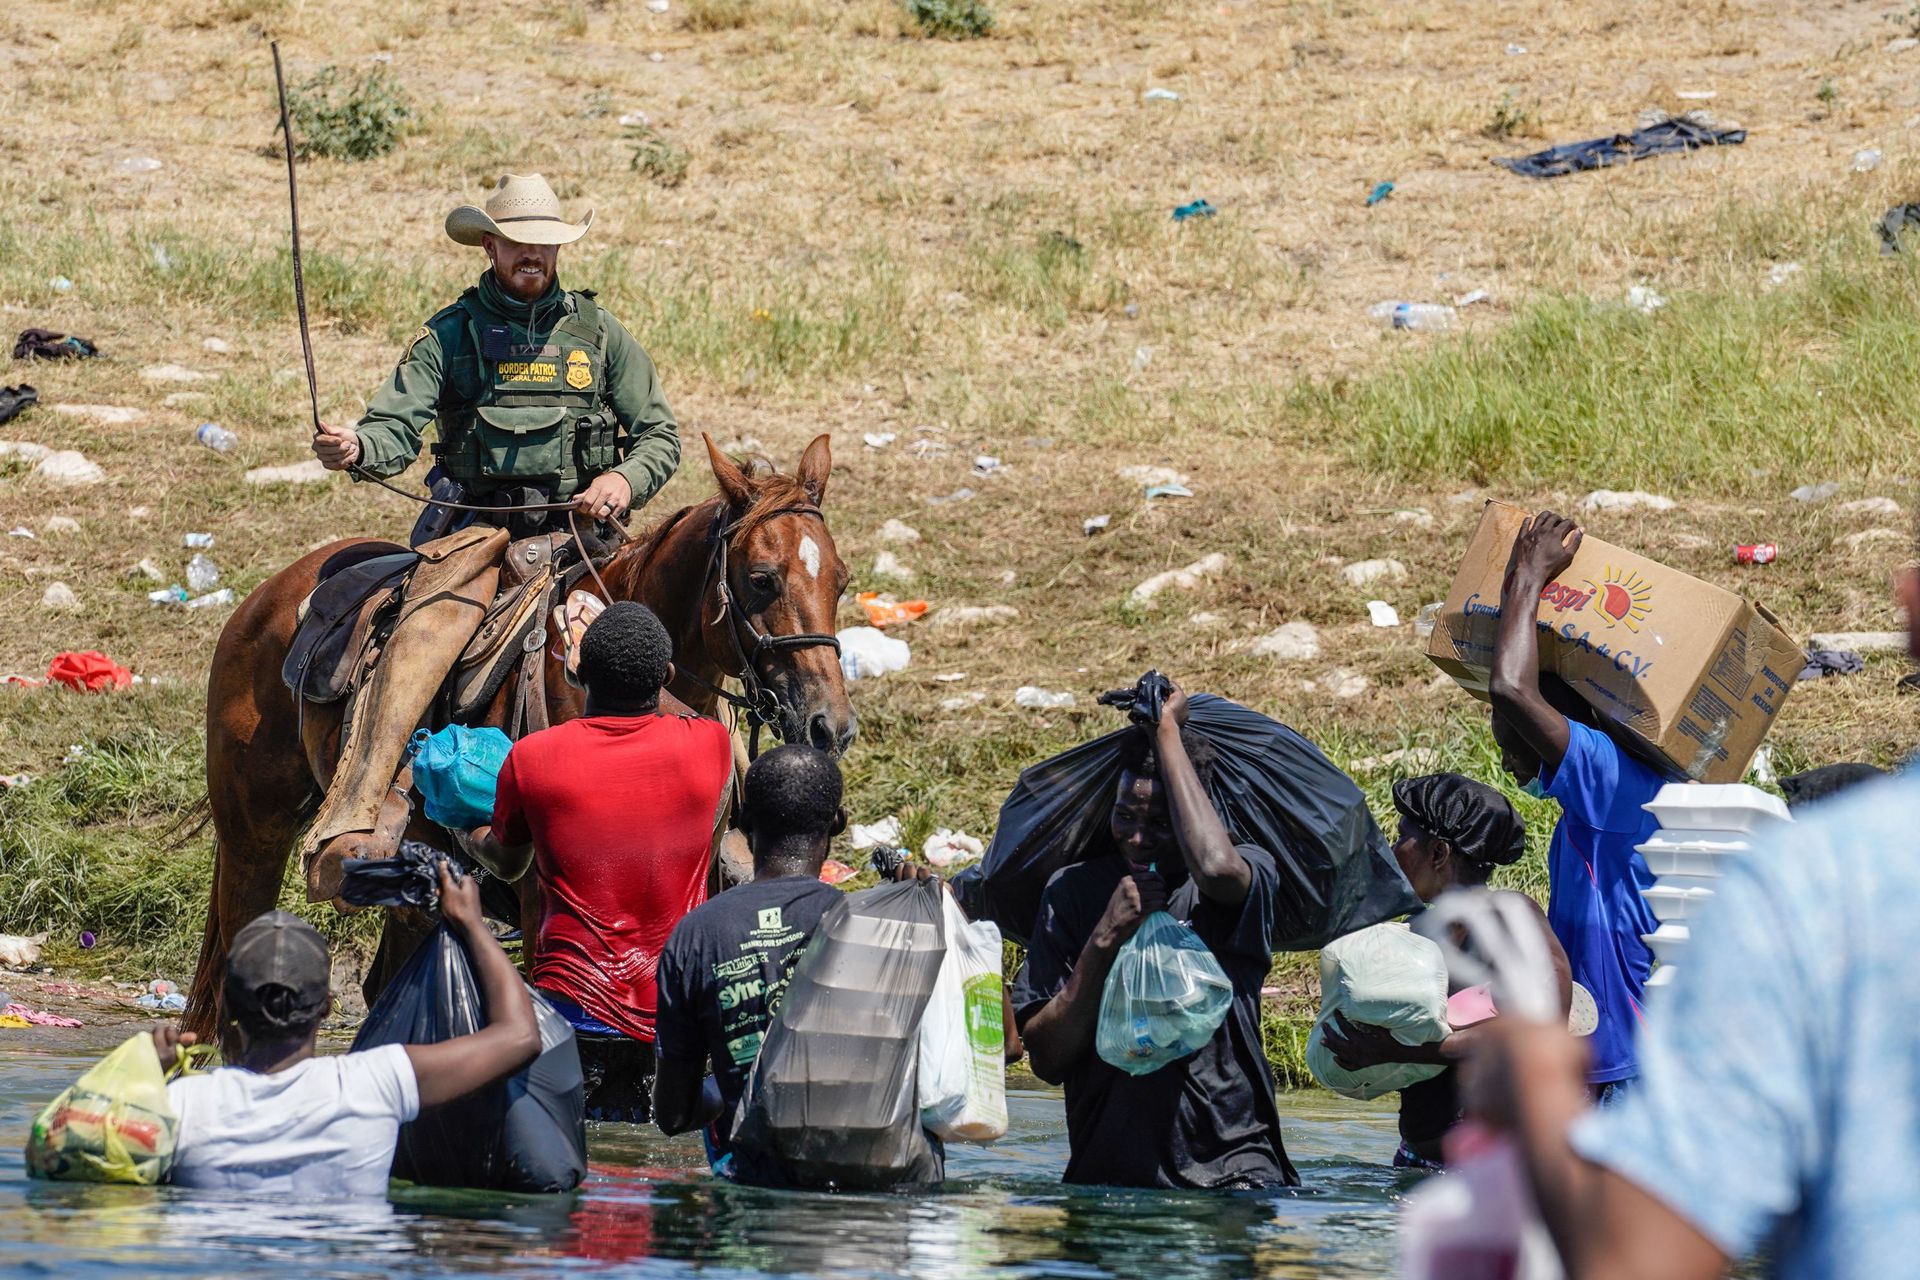 Un agent de la patrouille frontalière des États-Unis à cheval utilise les rênes alors qu’il tente d’empêcher des migrants haïtiens d’entrer dans un campement sur les rives du Rio Grande près du pont international Acuna Del Rio à Del Rio, au Texas, le 19 s